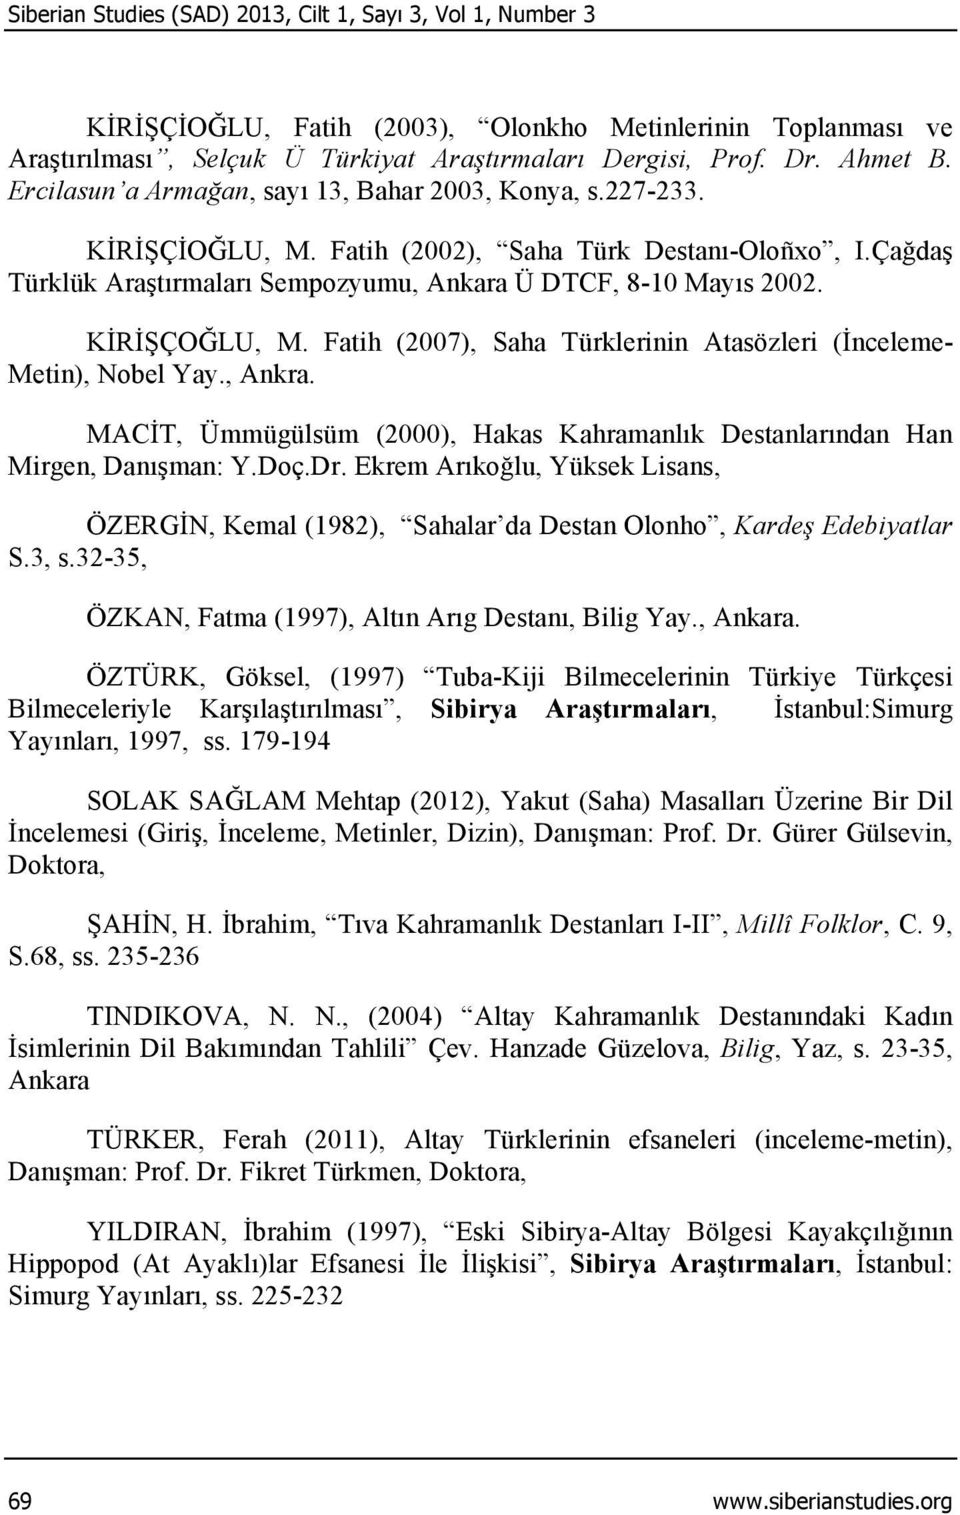 KİRİŞÇOĞLU, M. Fatih (2007), Saha Türklerinin Atasözleri (İnceleme- Metin), Nobel Yay., Ankra. MACİT, Ümmügülsüm (2000), Hakas Kahramanlık Destanlarından Han Mirgen, Danışman: Y.Doç.Dr.